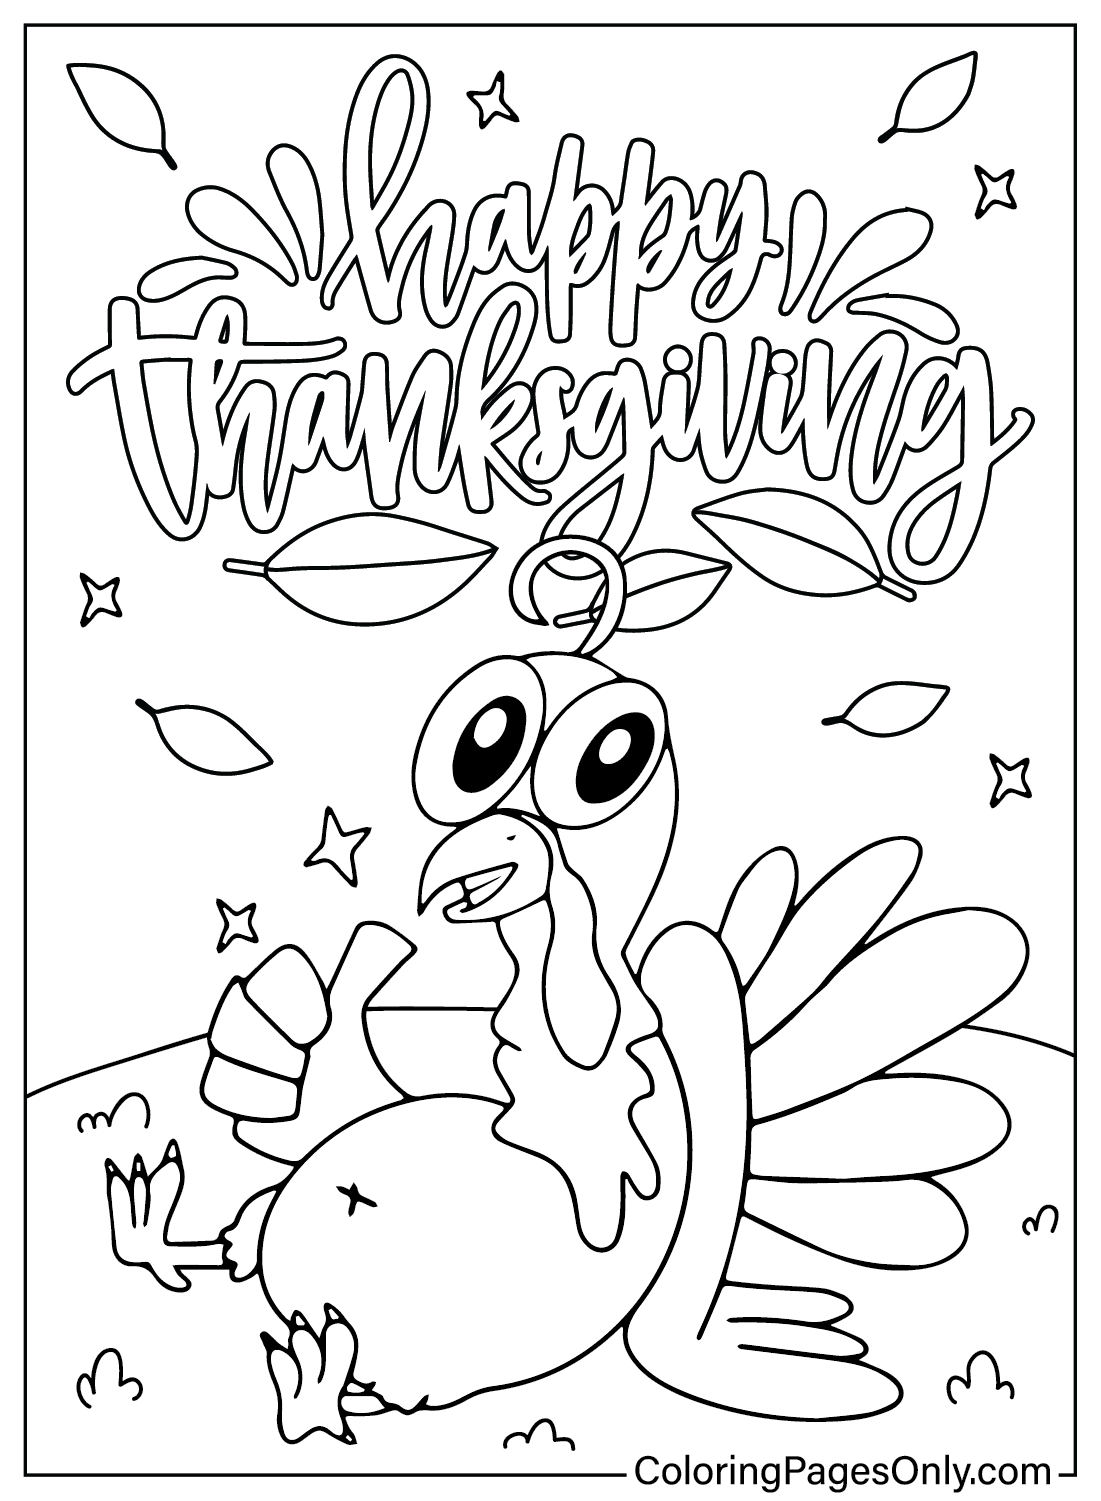 Página colorida dos desenhos animados de Ação de Graças from Thanksgiving Cartoon